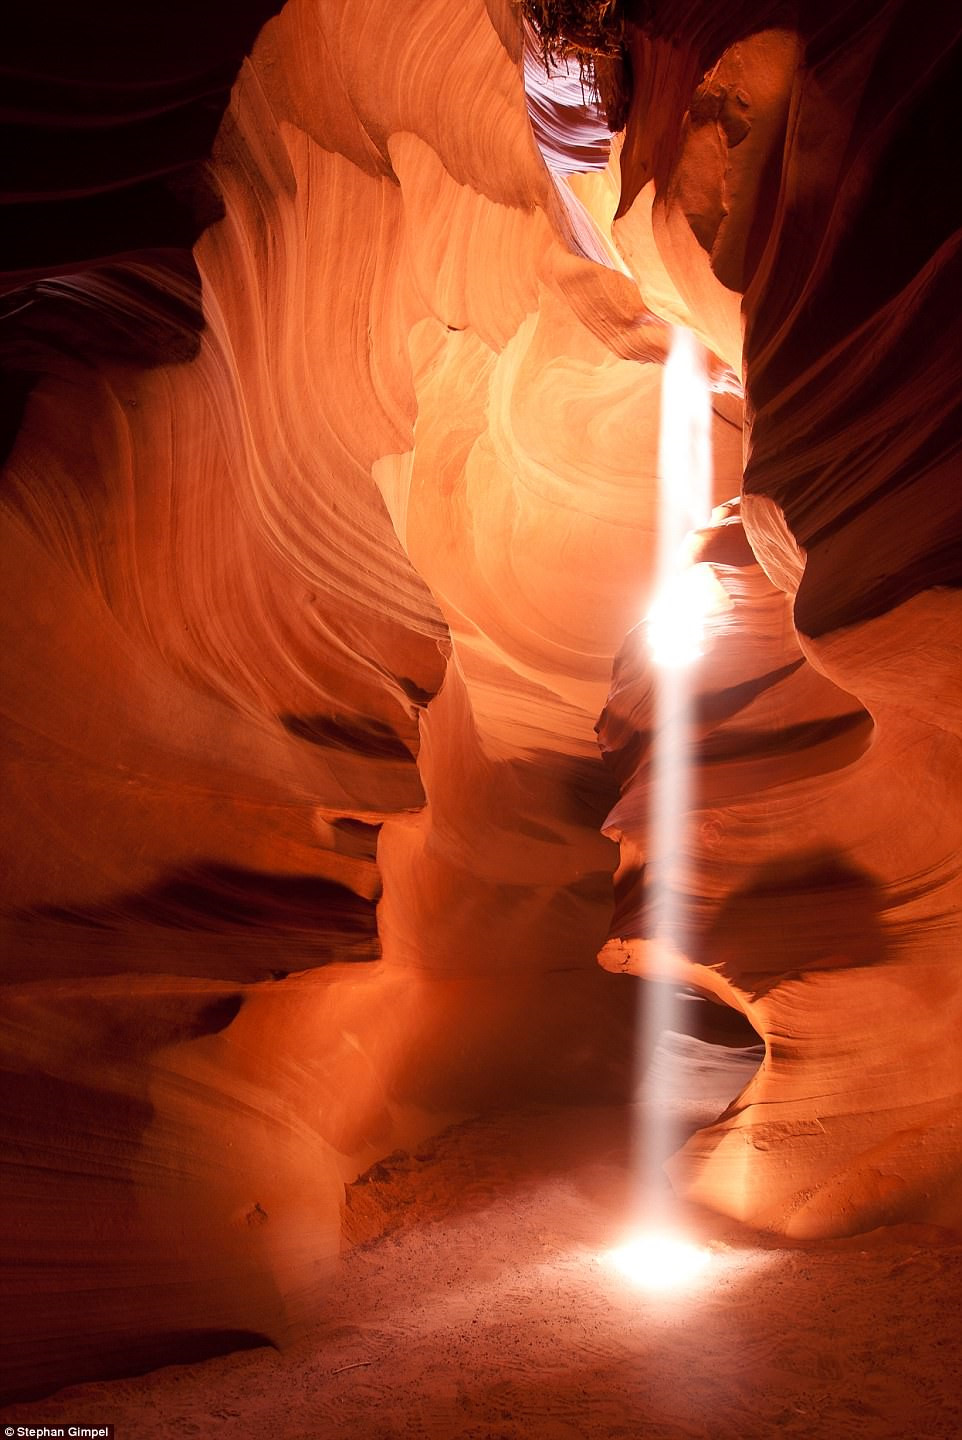 Stephan Gimpel chụp bức ảnh “Ánh sáng chiếu rọi” ở Arizona (Mỹ). Ông chụp vào buổi trưa, khi ánh sáng mặt trời chiếu trong hẻm núi hẹp, ánh nắng hắt lên những tảng đá, tạo nên hiệu ứng đặc biệt.